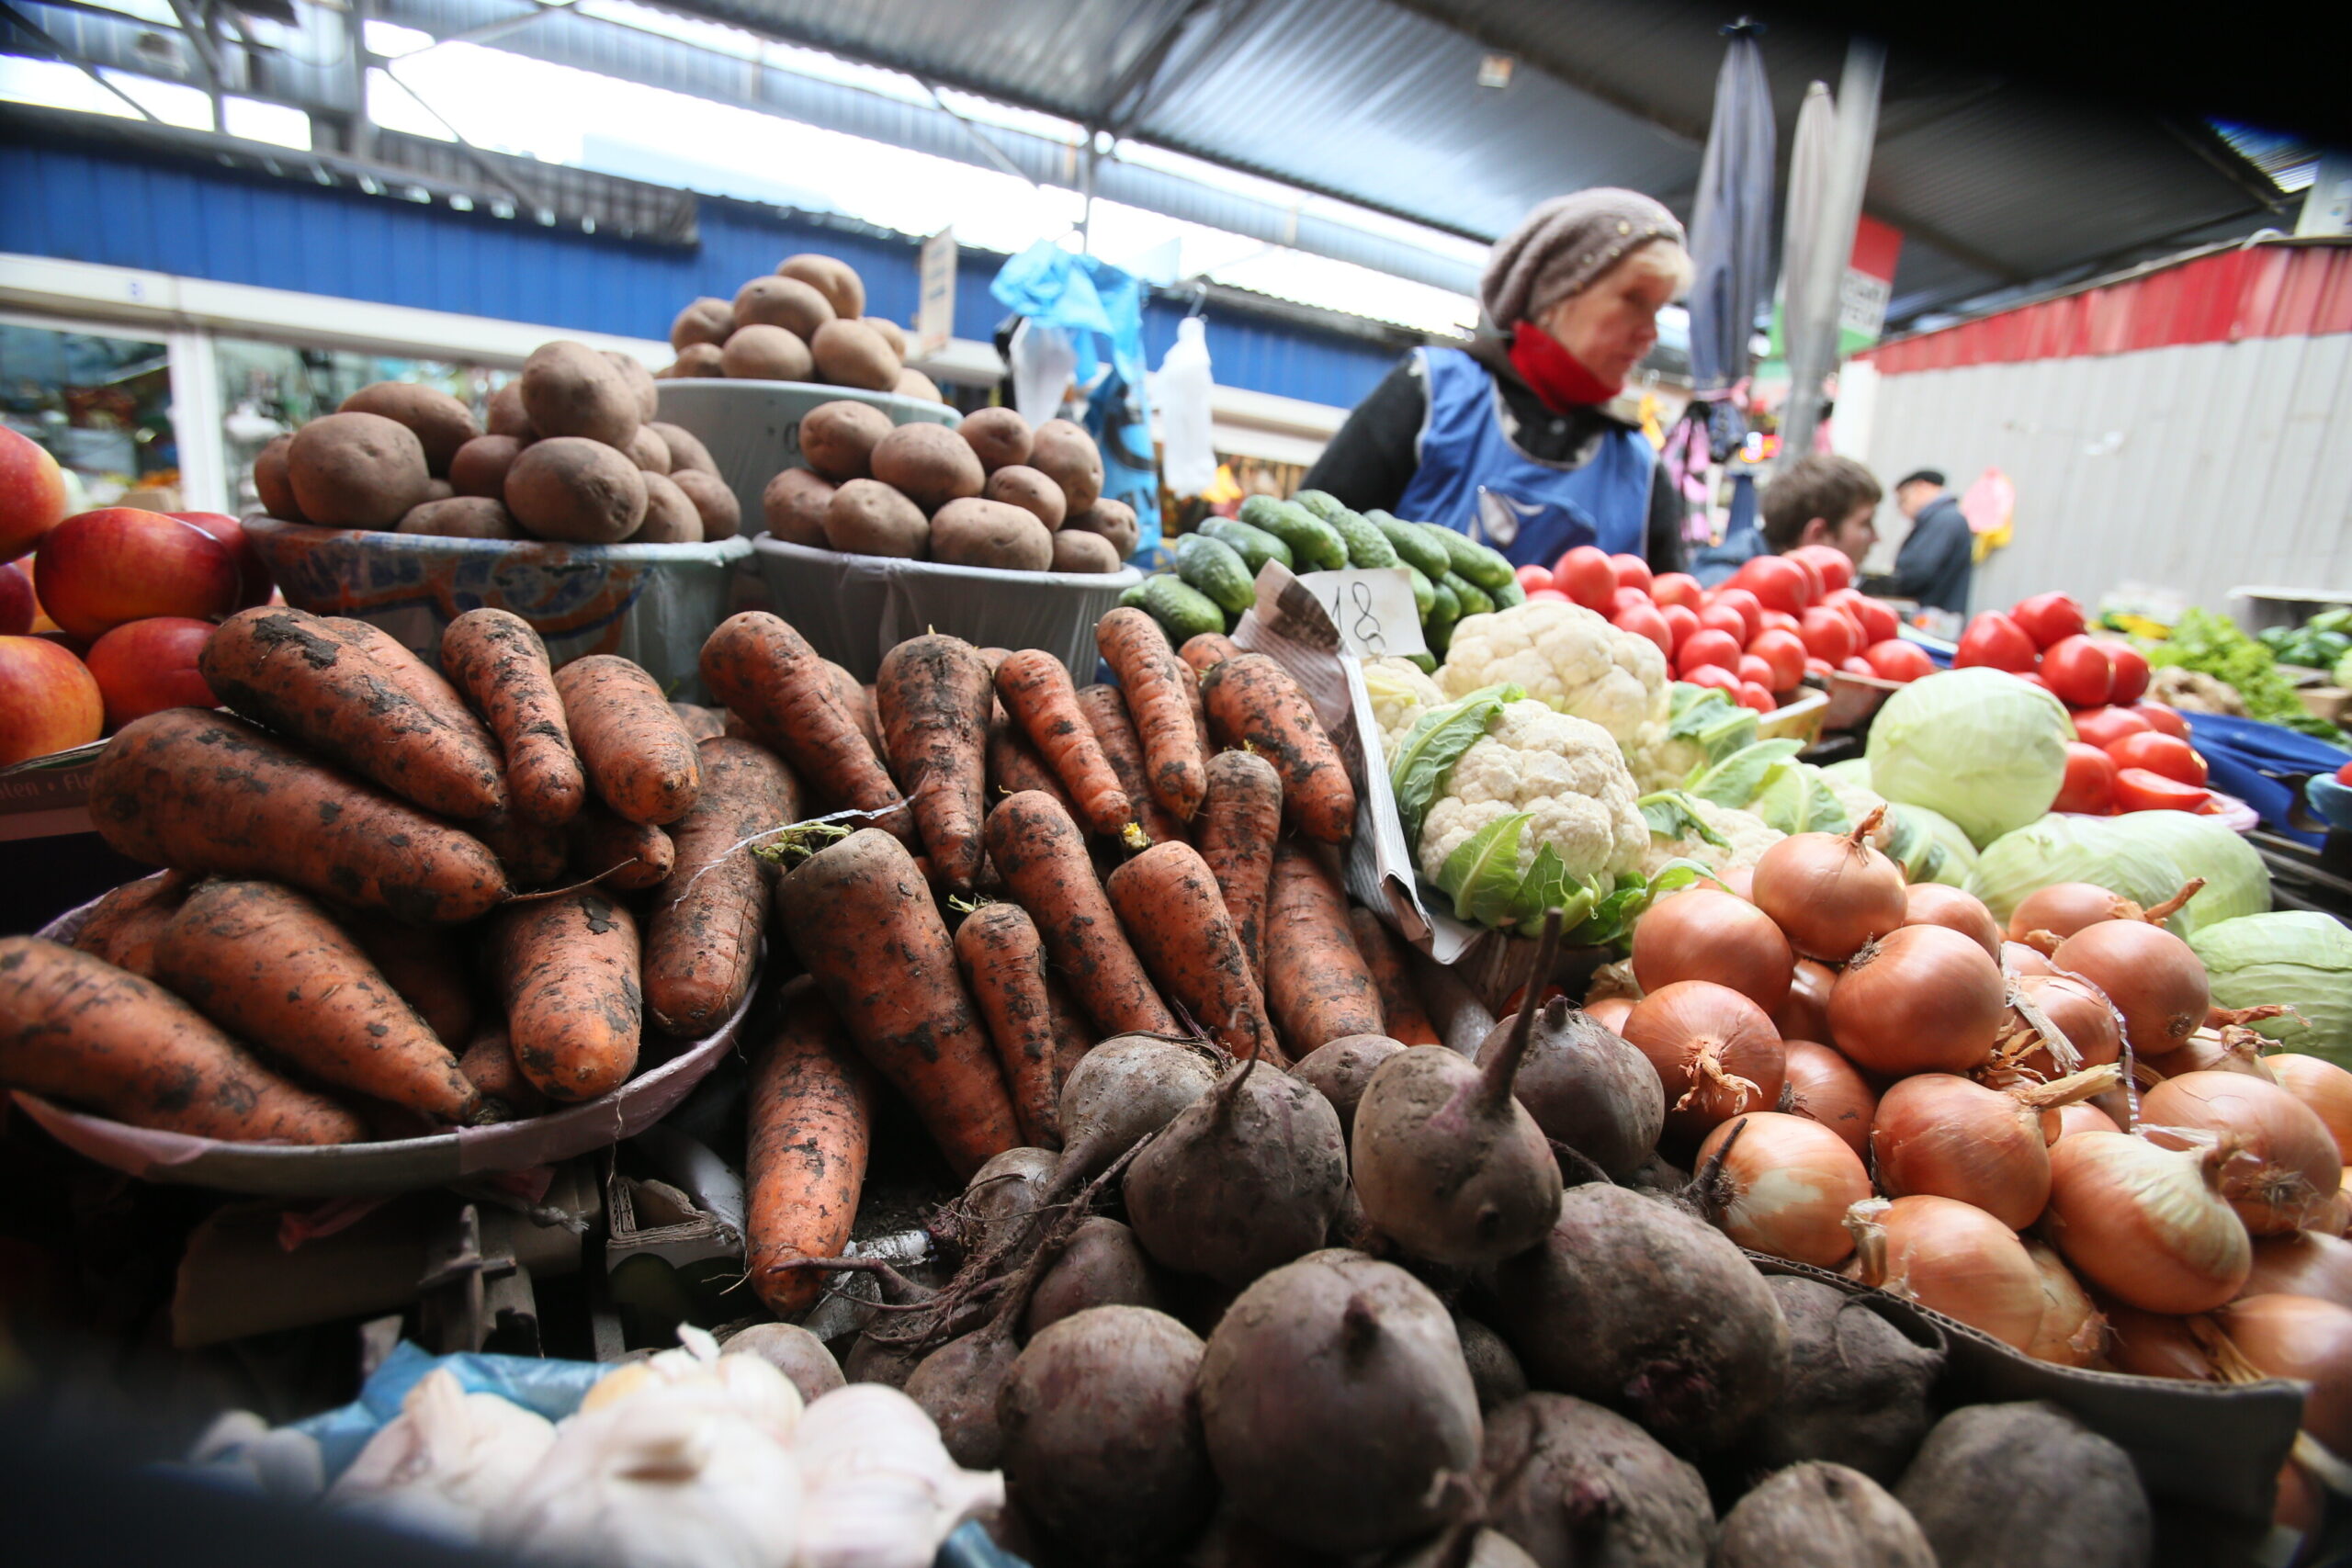 Скупайте пока есть возможность: в Украине начал резко дорожать популярный овощ